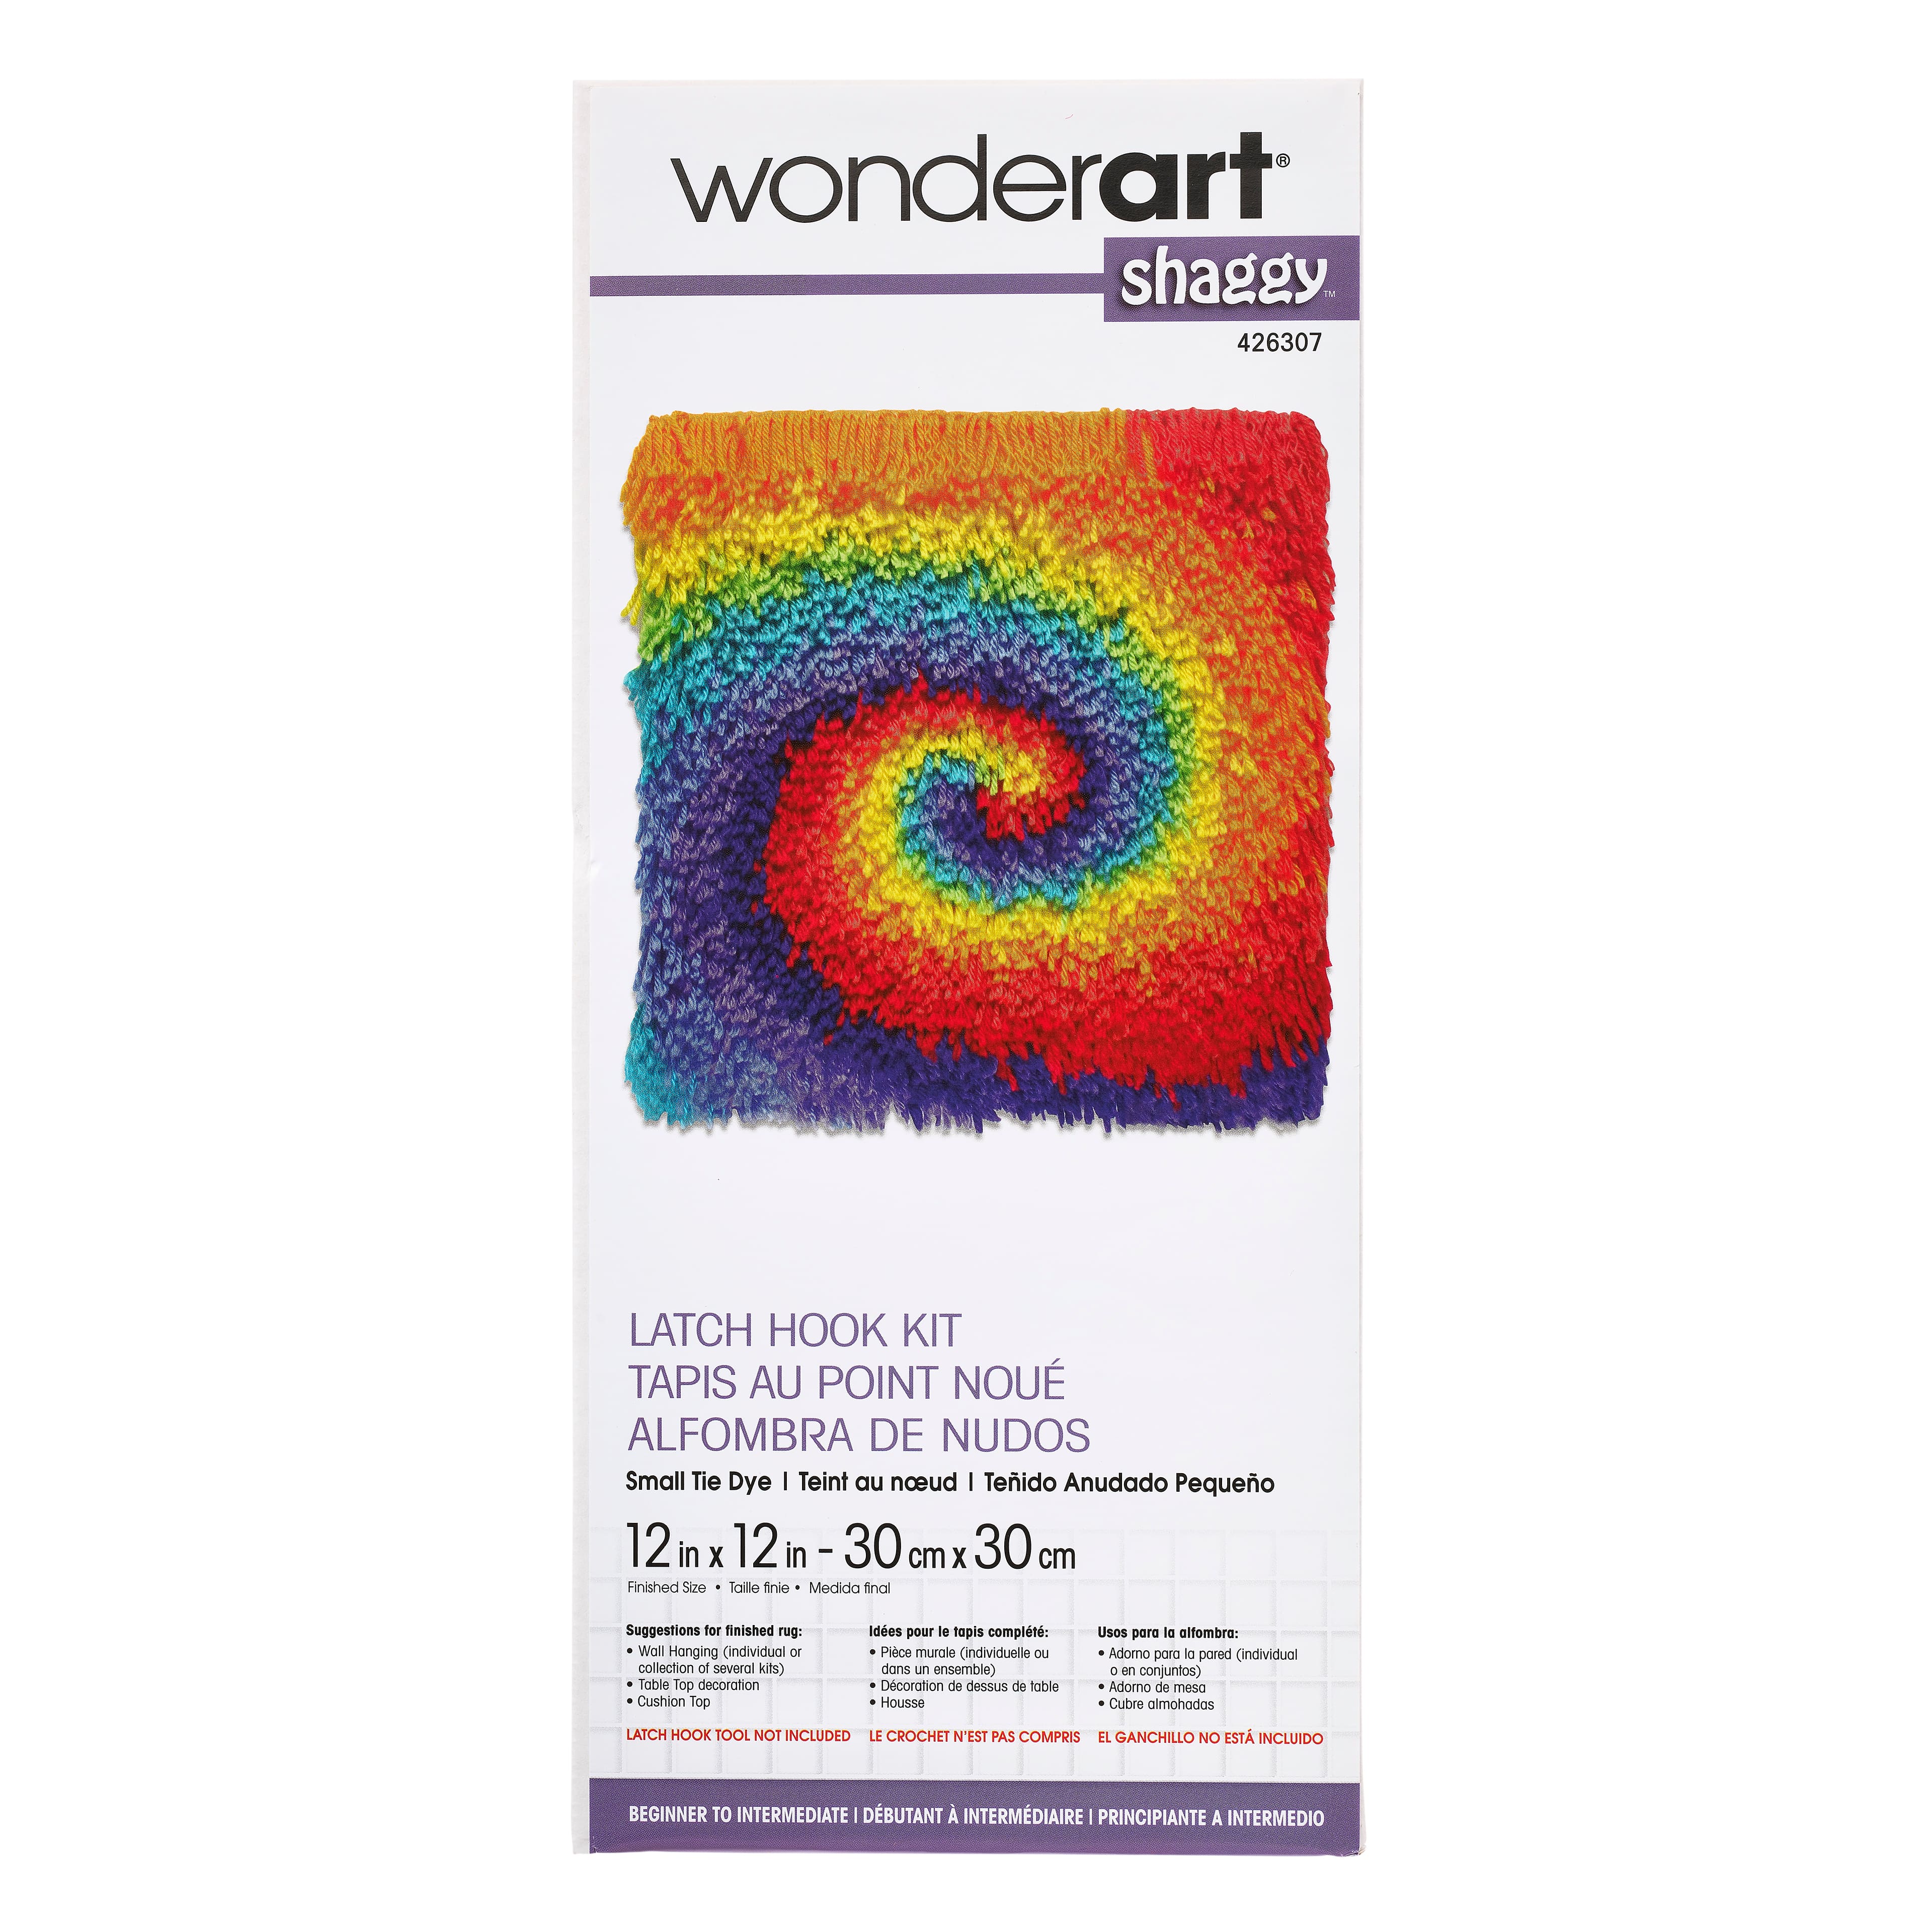 Wonderart® Shaggy Small Tie-Dye Latch Hook Kit